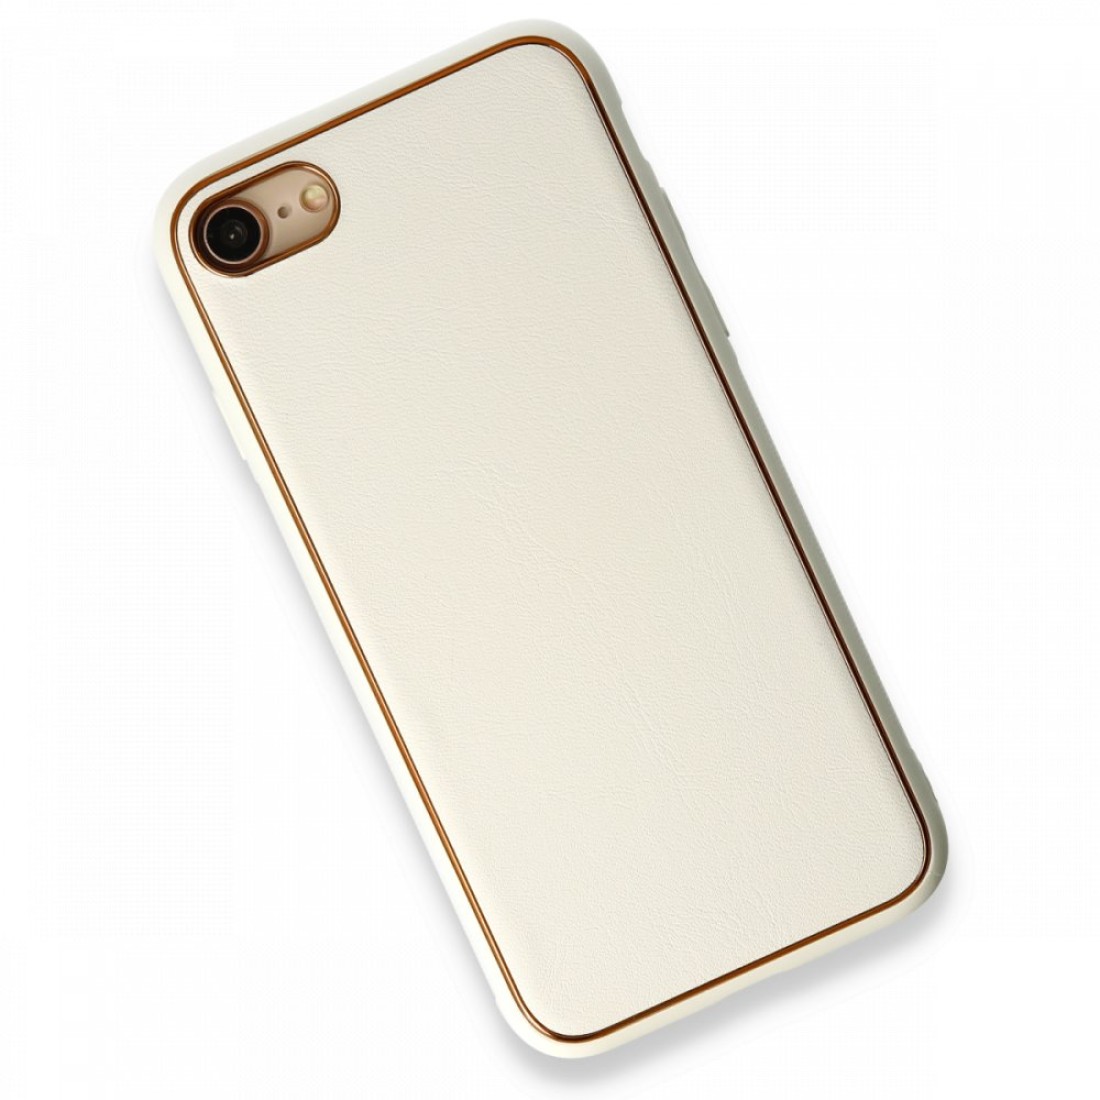 Apple iPhone SE 2020 Kılıf Coco Deri Silikon Kapak - Beyaz